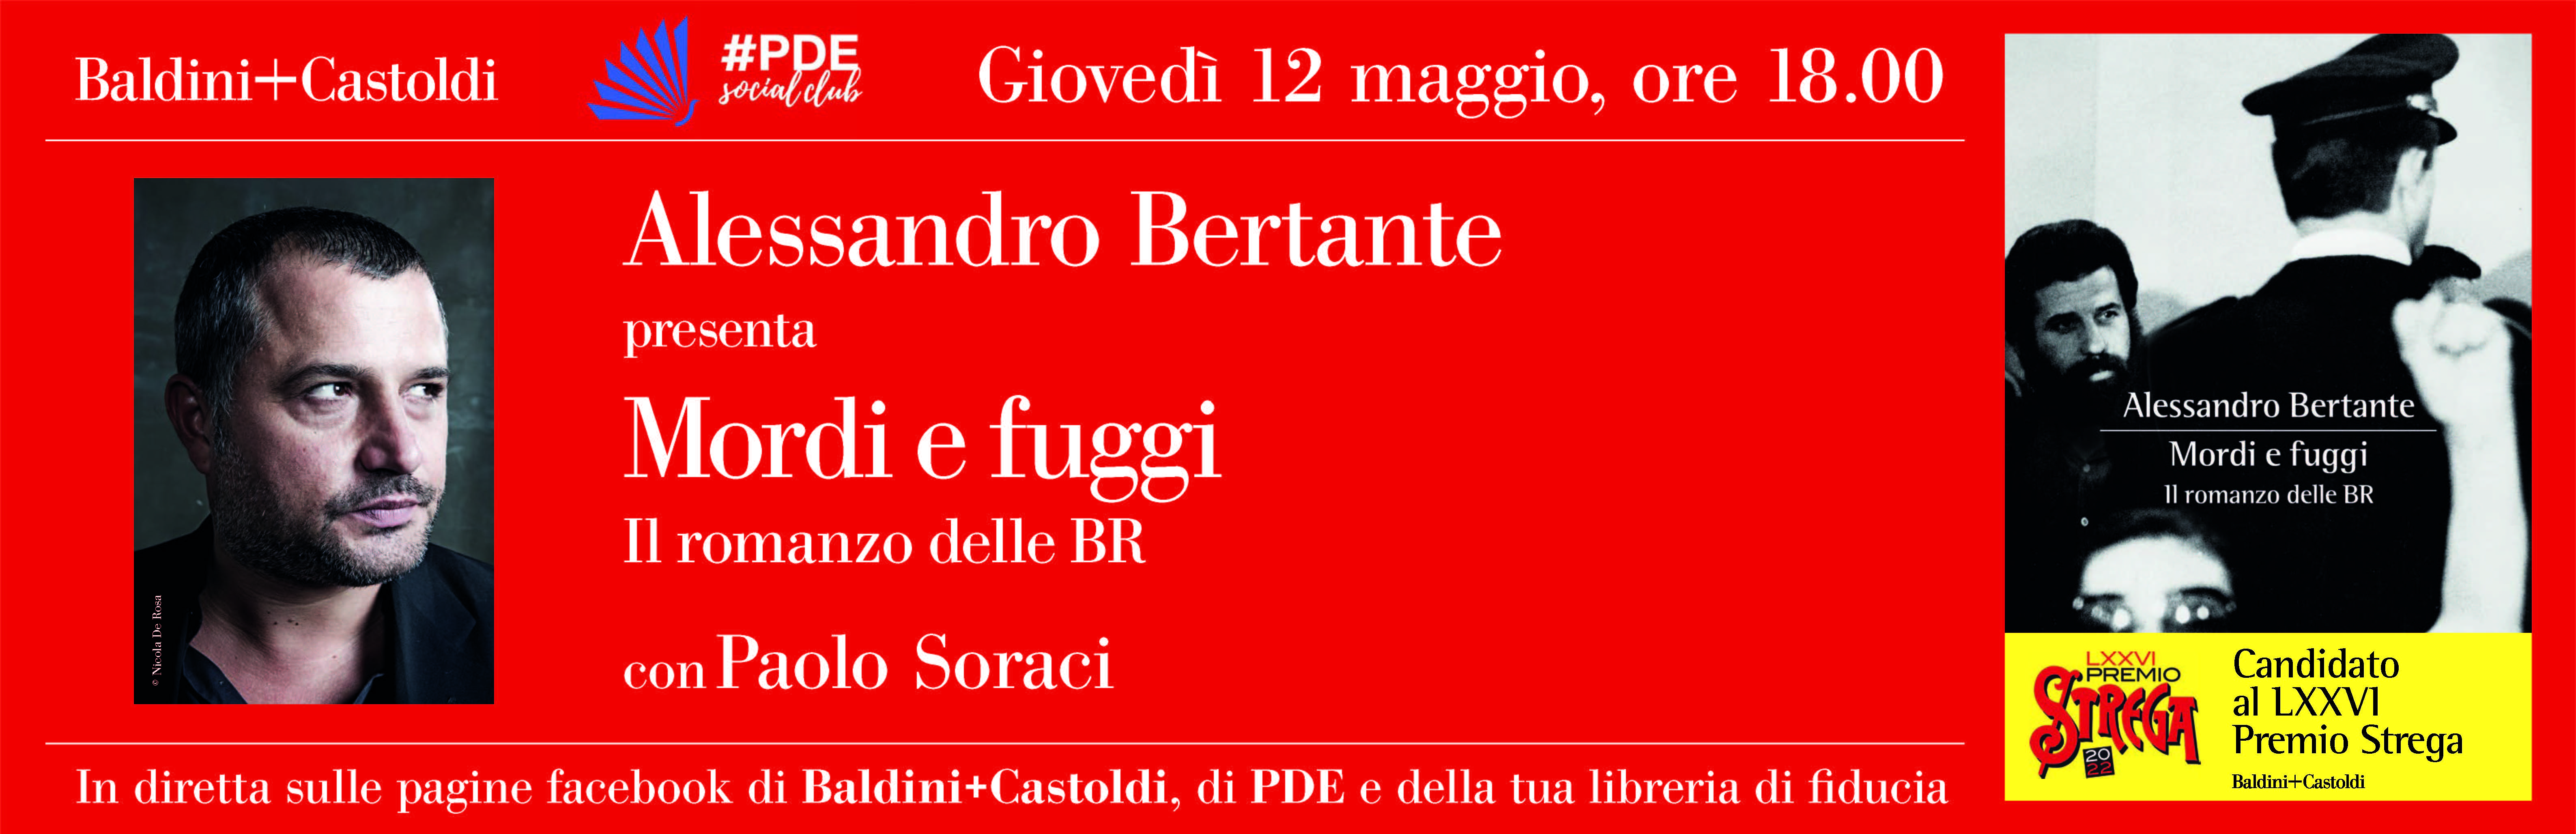 Bertante – Baldini + Castoldi